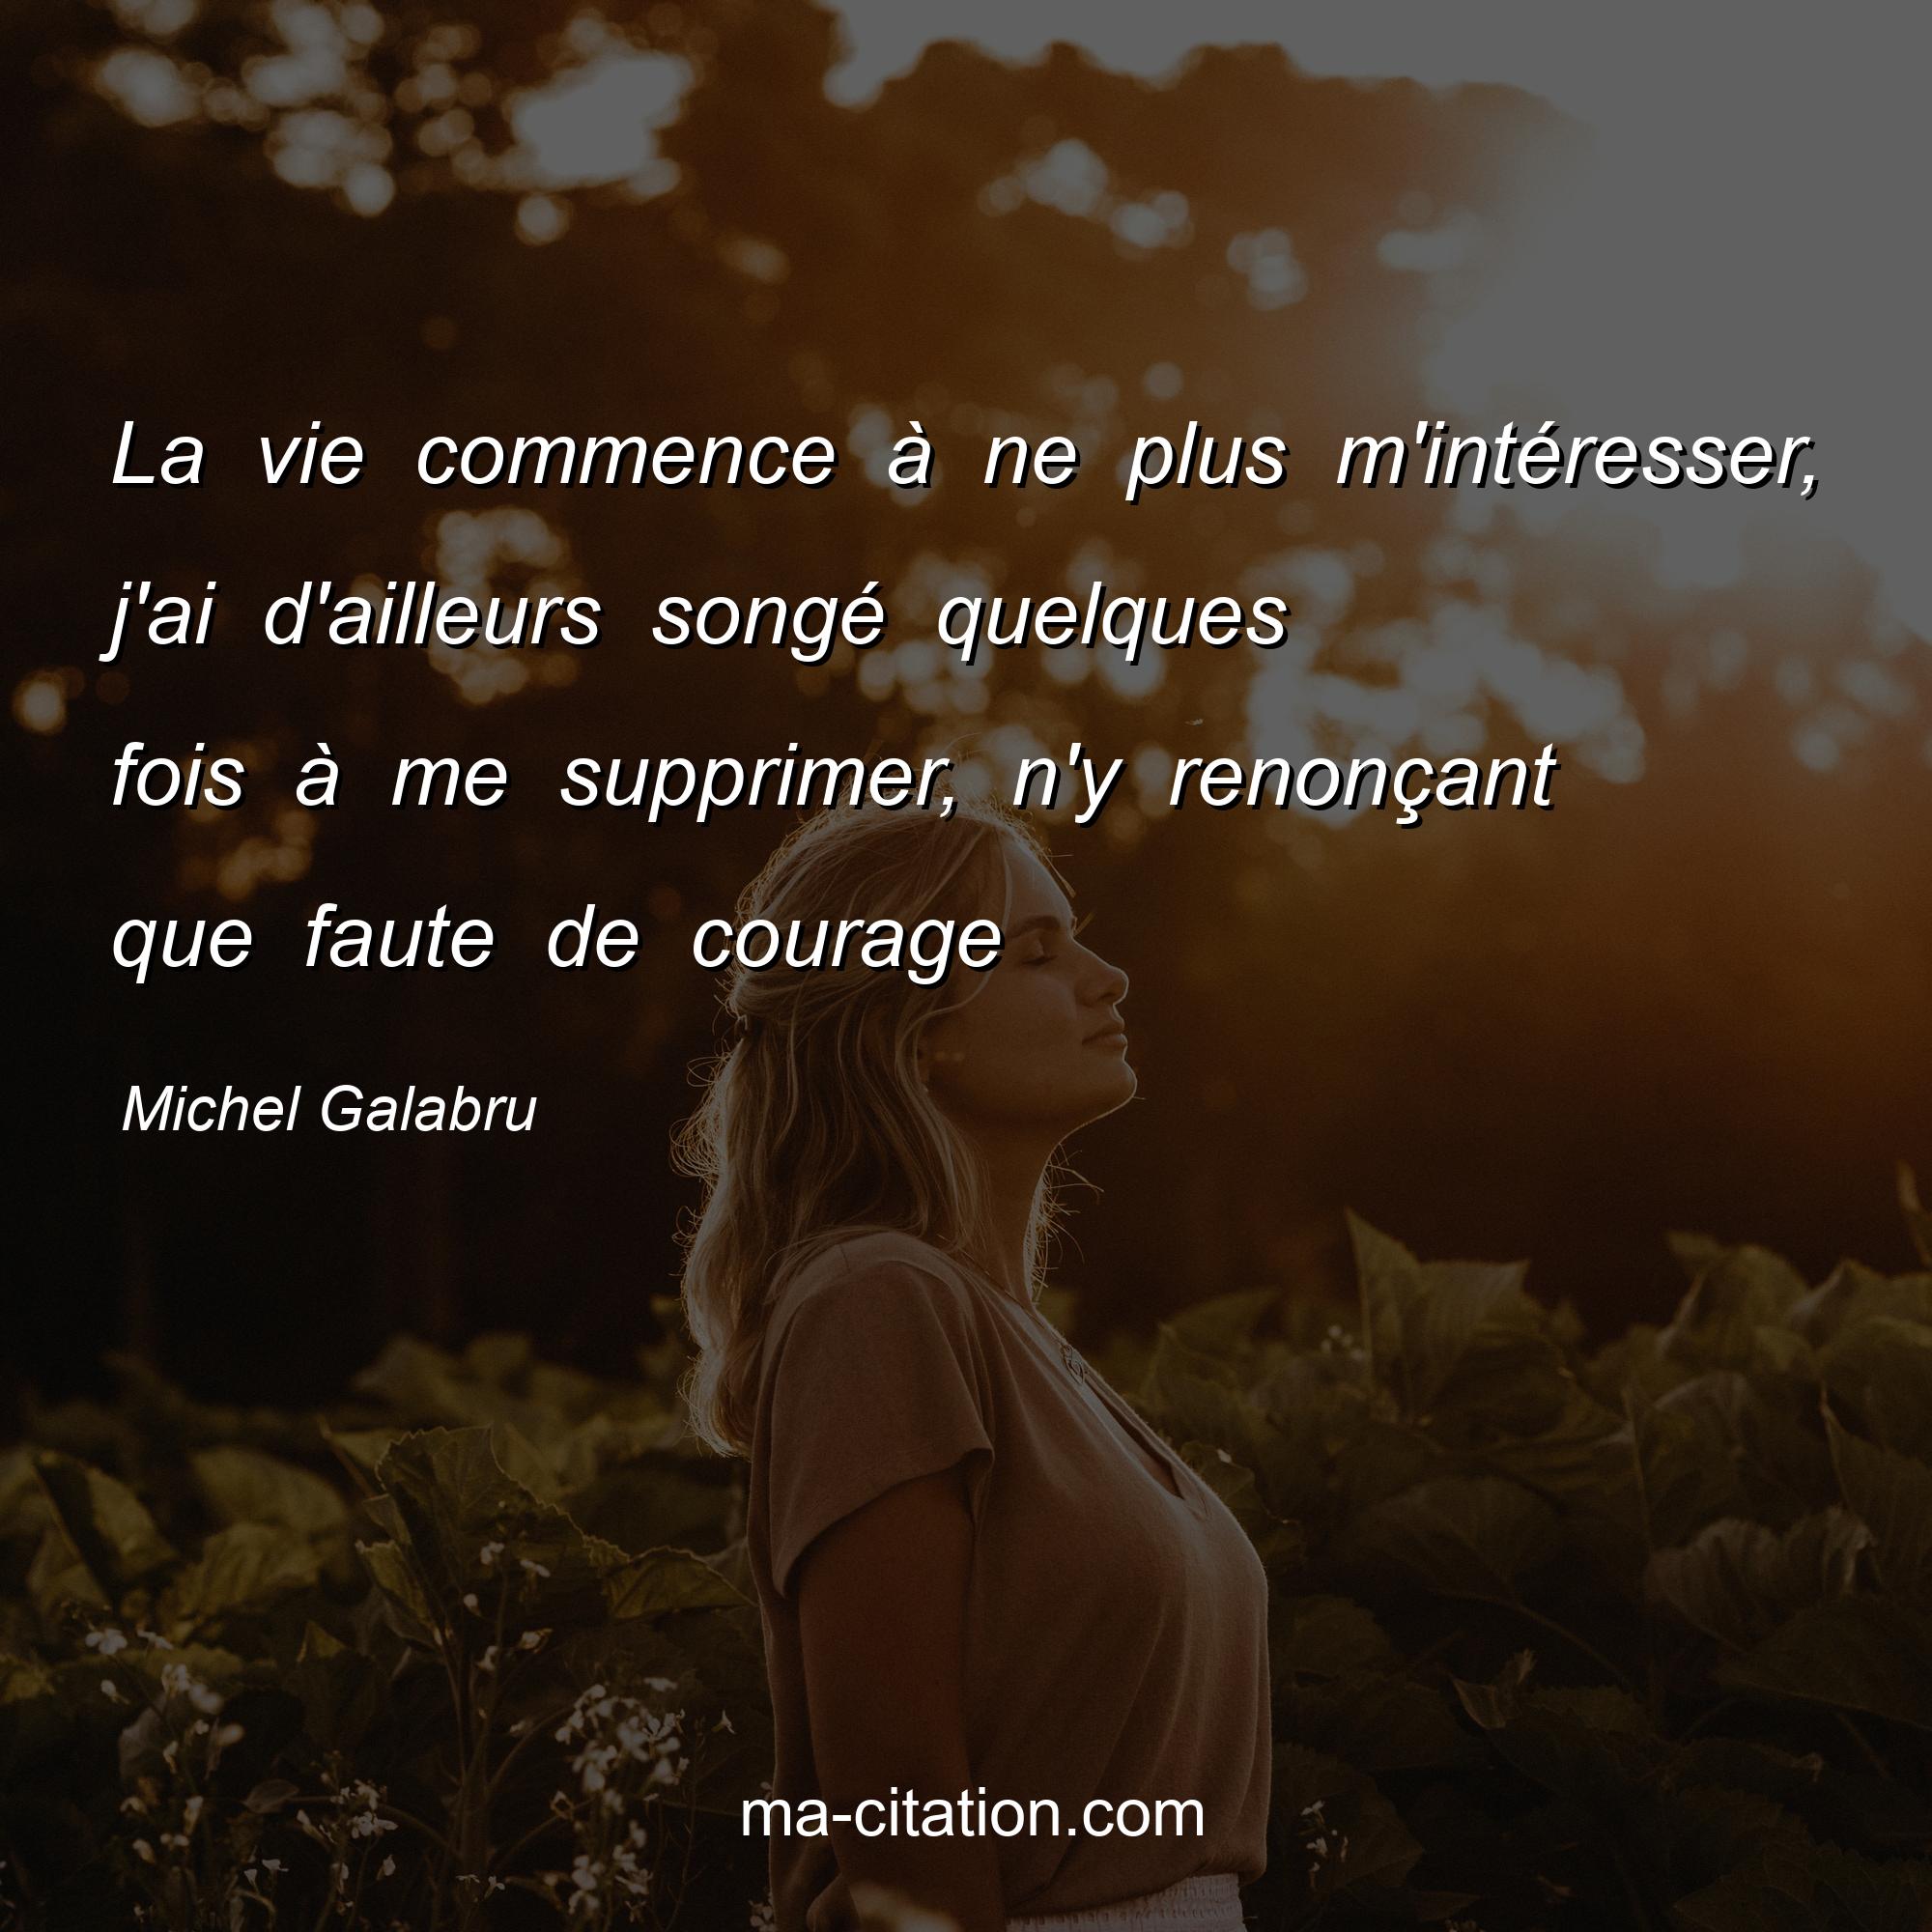 Michel Galabru : La vie commence à ne plus m'intéresser, j'ai d'ailleurs songé quelques fois à me supprimer, n'y renonçant que faute de courage